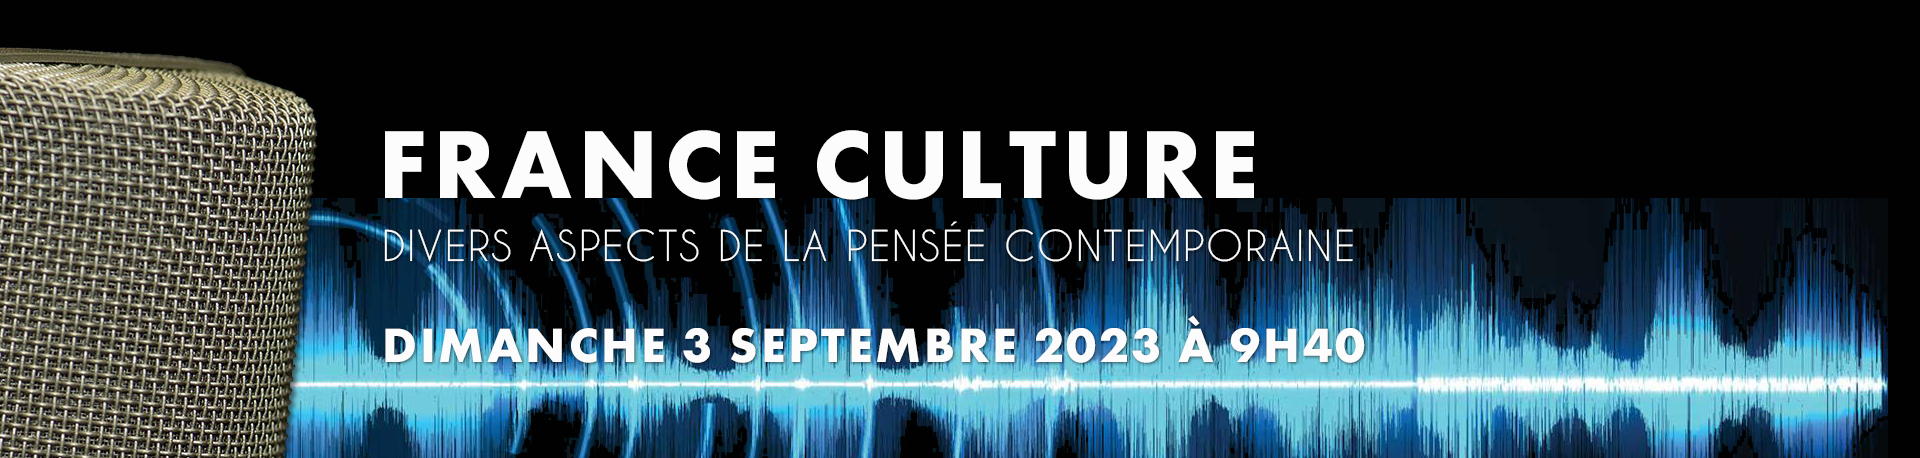 Divers aspects de la pensée contemporaine. Émission du dimanche 3 septembre 2023 à 9h40 sur France Culture